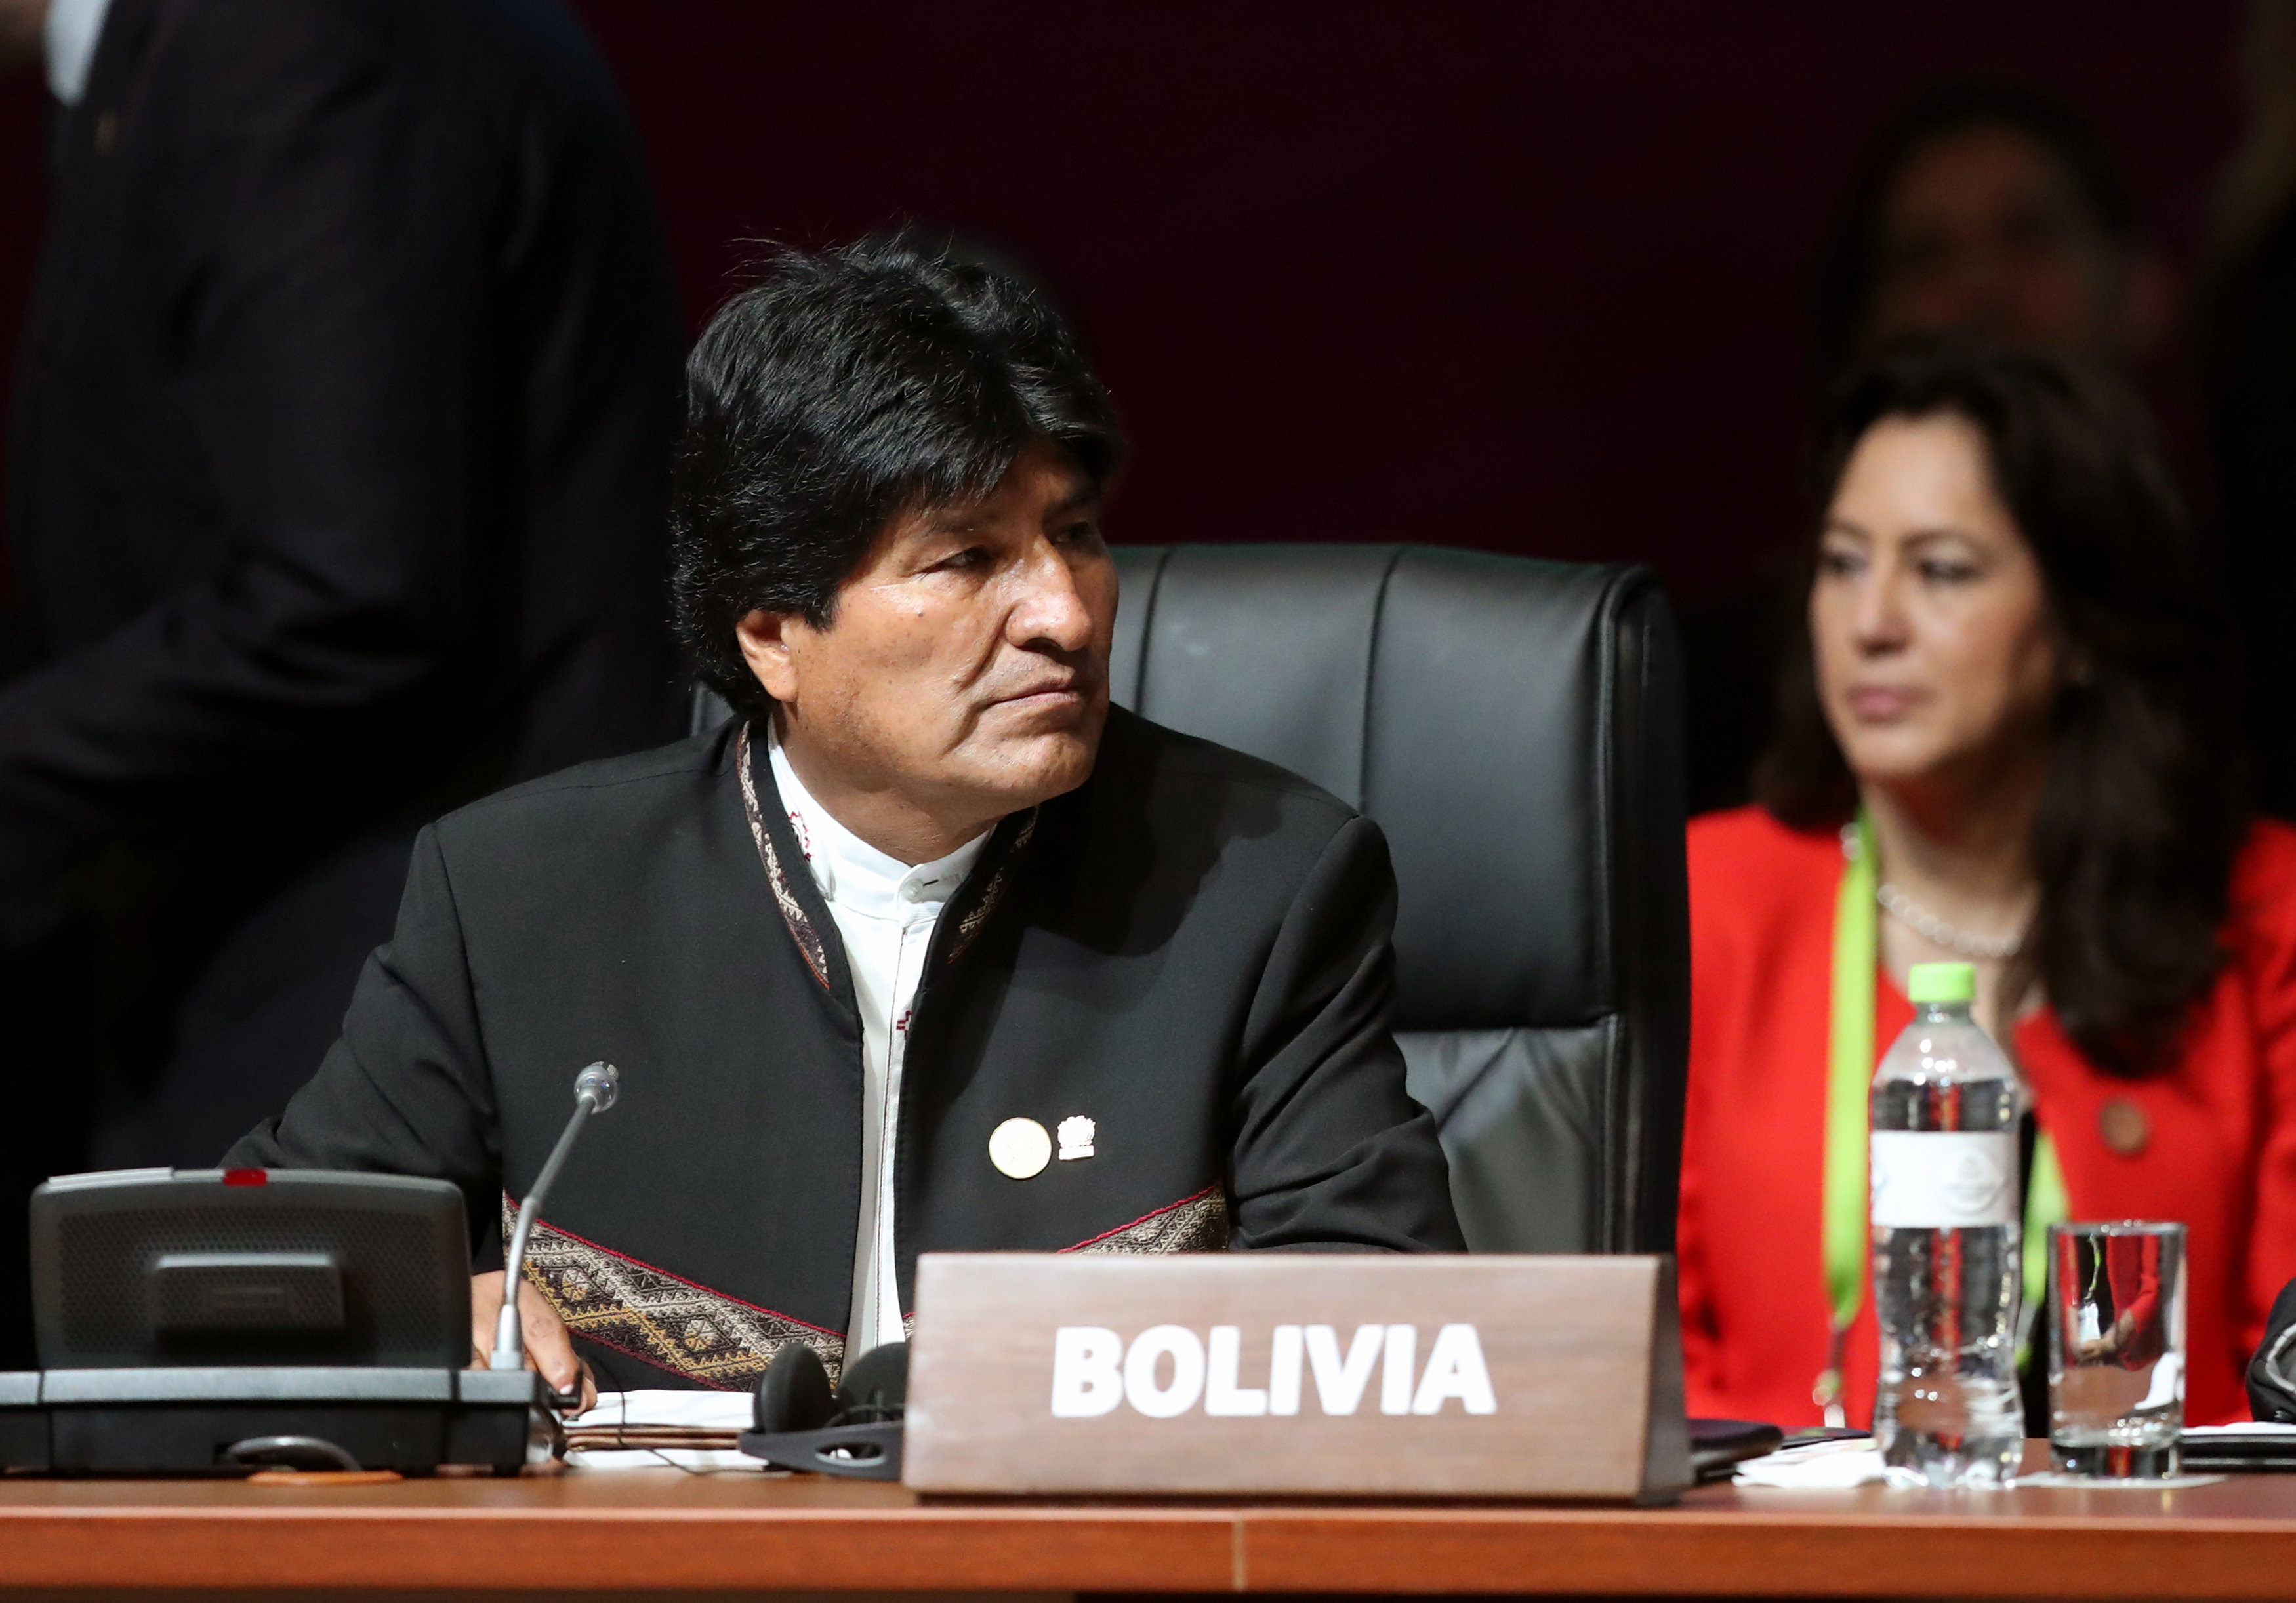 Hackean Twitter Senado boliviano y anuncian muerte Evo Morales